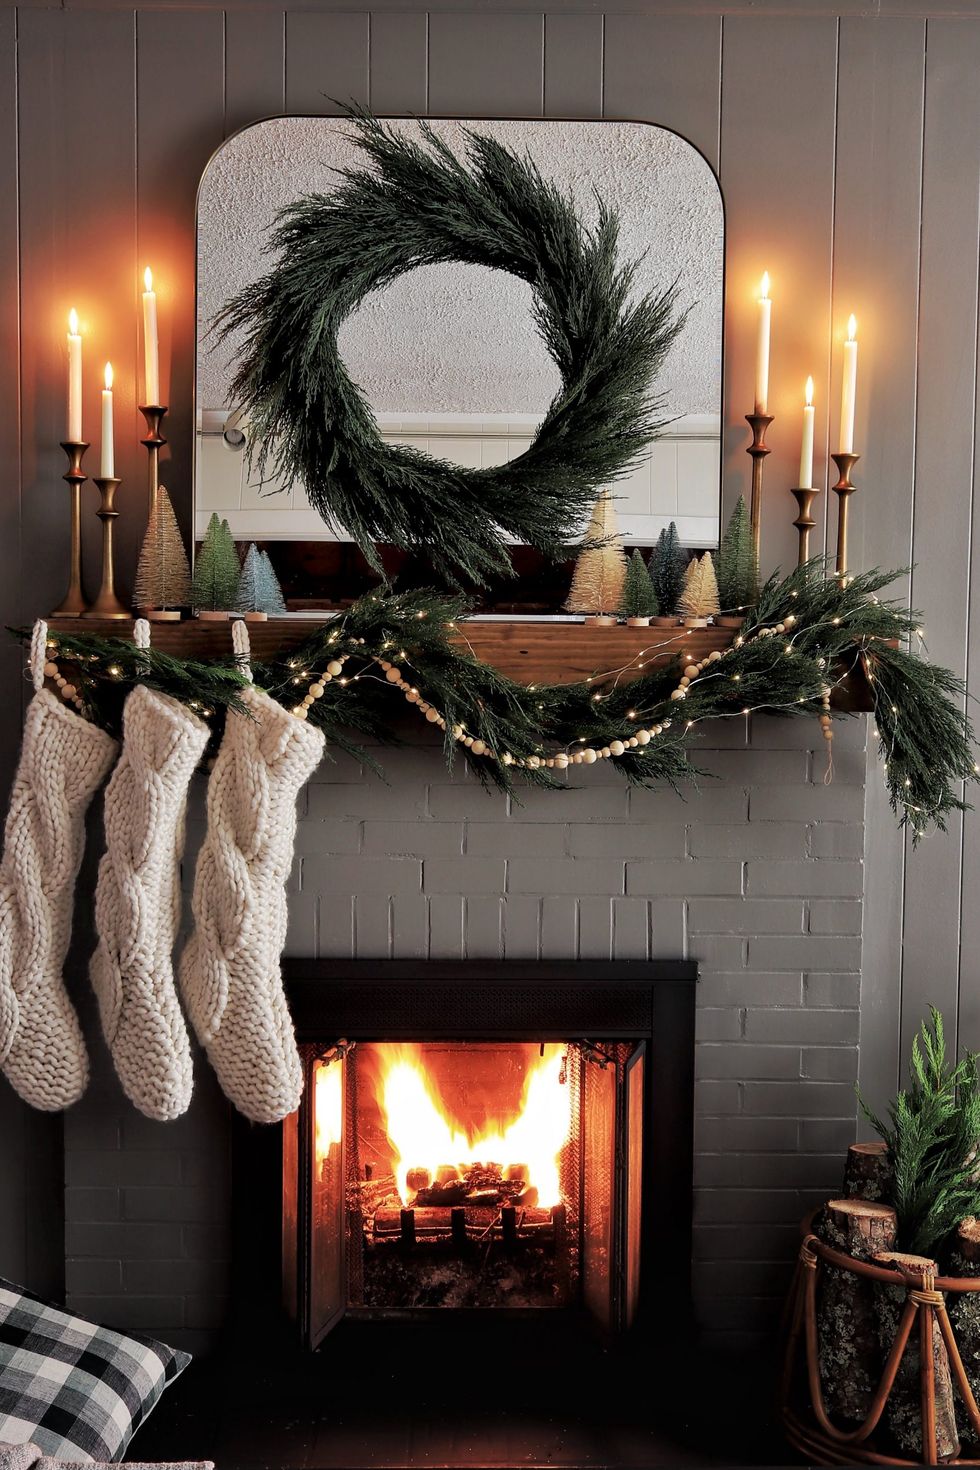 2023 Christmas Stocking Christmas Boots For Fireplace Socks